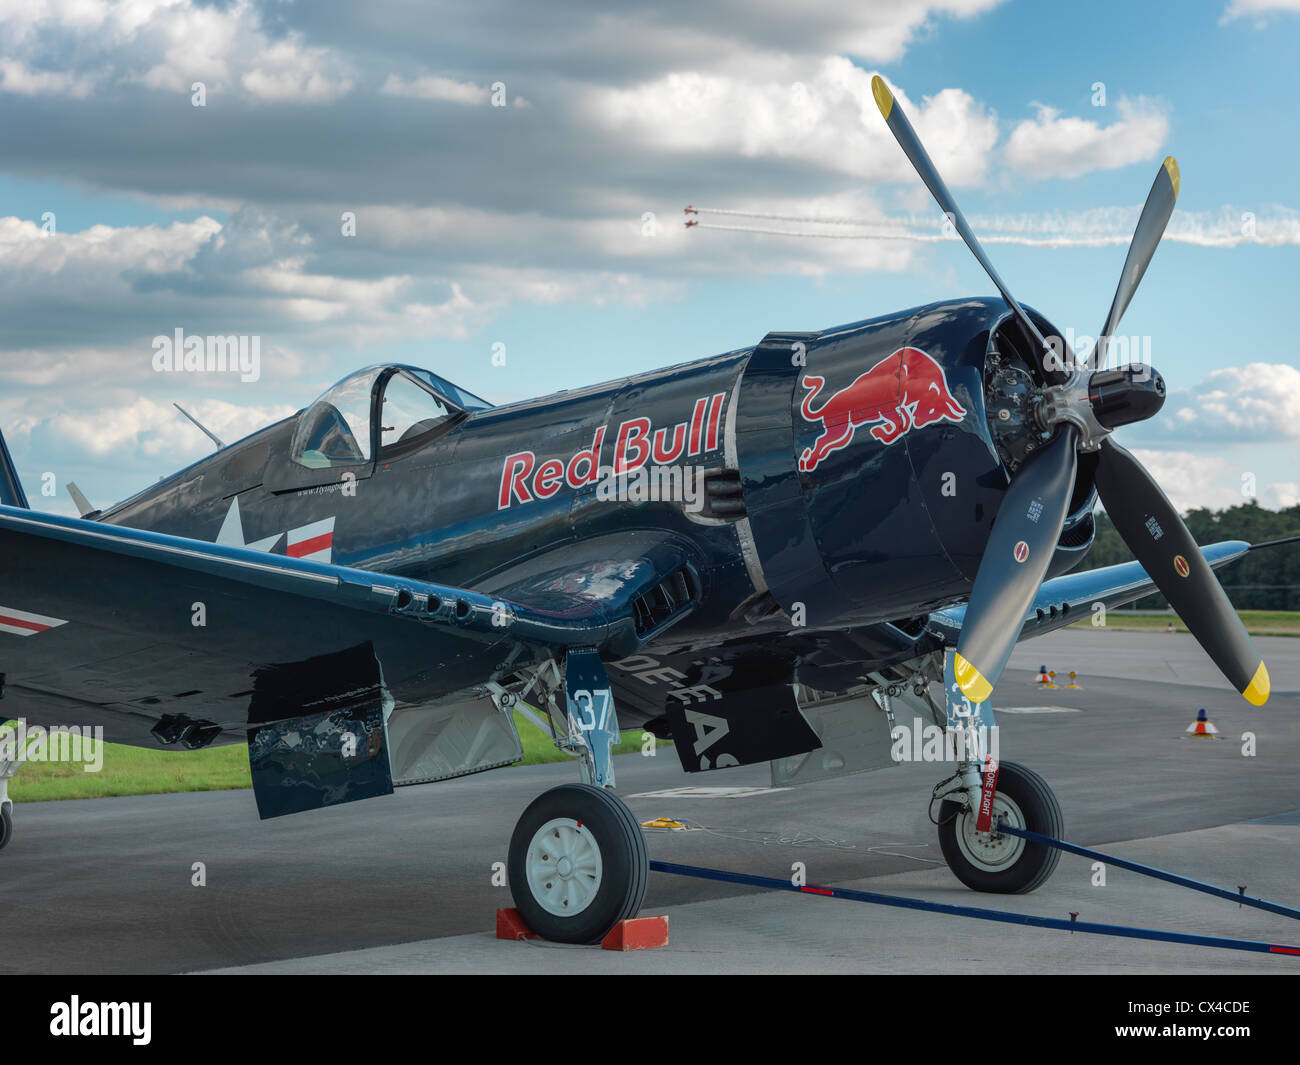 Chance Vought F4U Corsair fighter aircraft debout sur la piste, avec des nuages. Photo numérique Hasselblad haute résolution. Banque D'Images